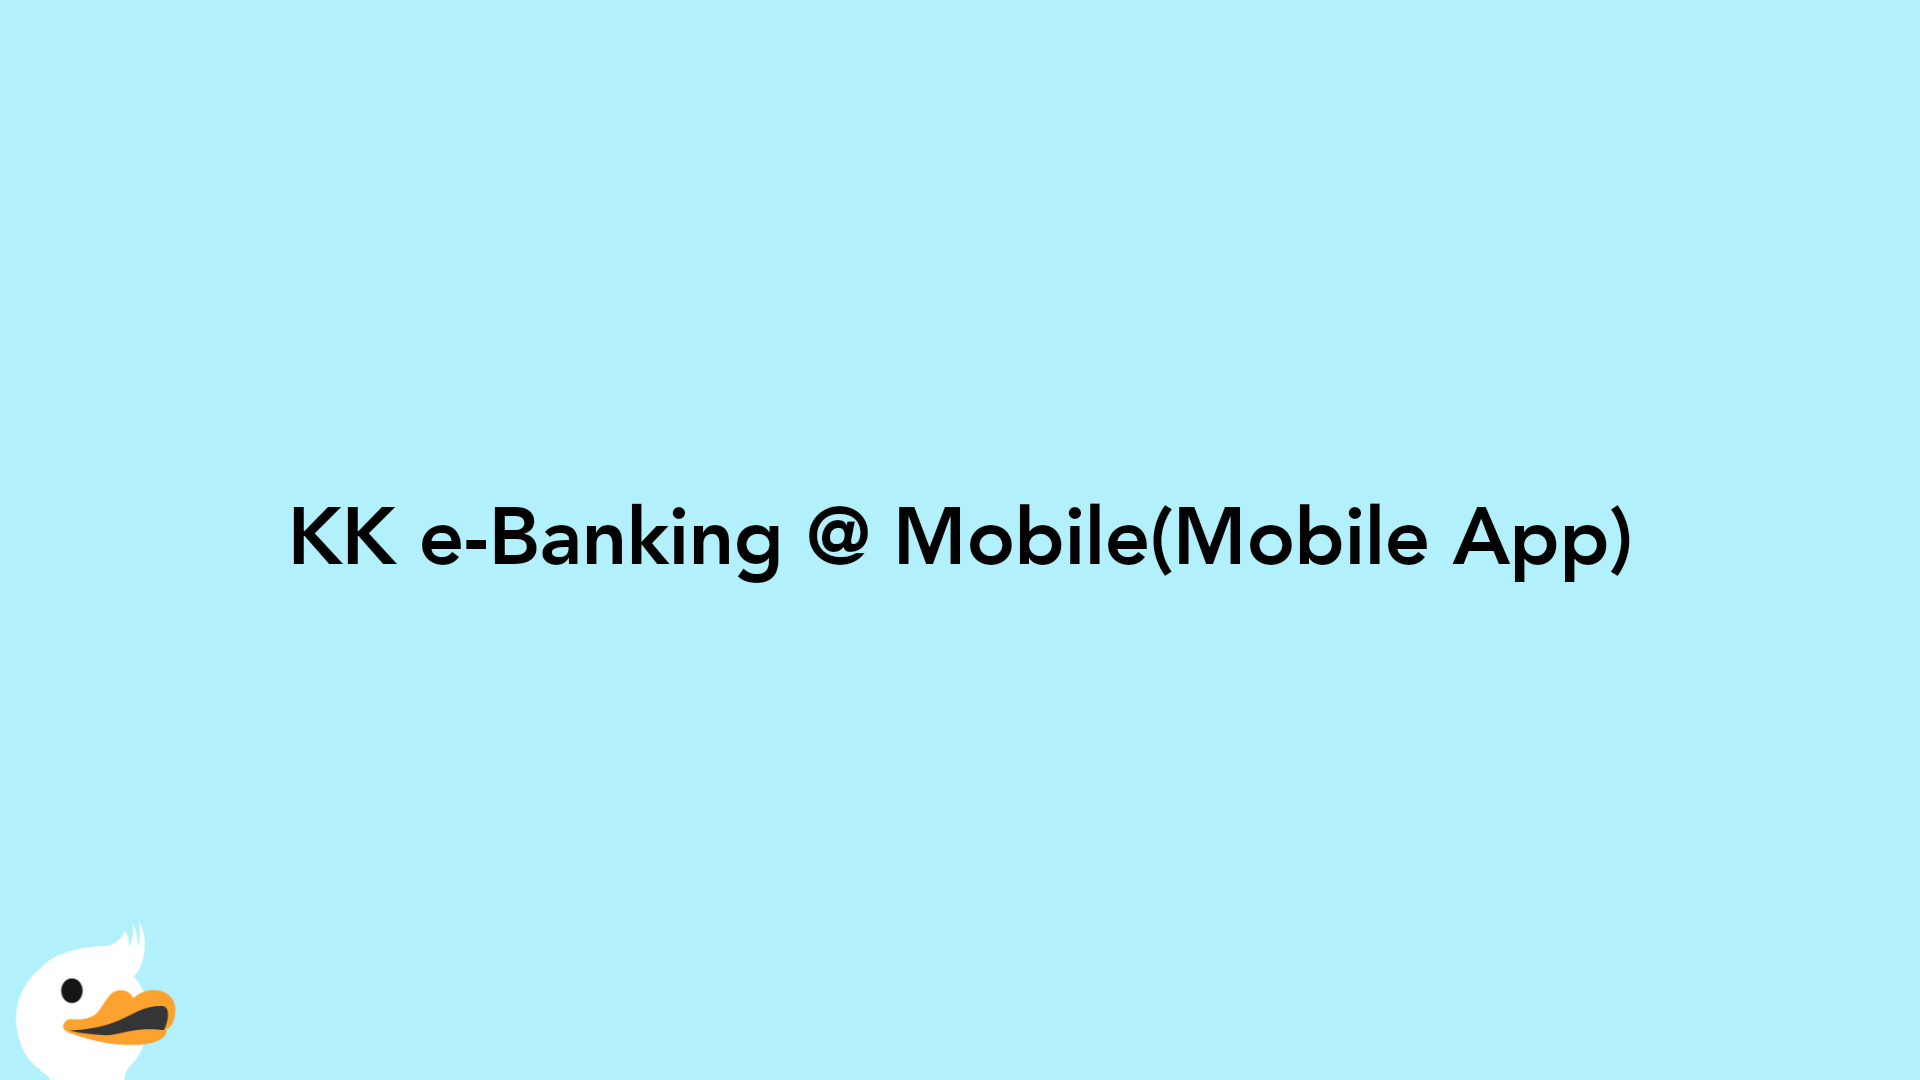 KK e-Banking @ Mobile(Mobile App)